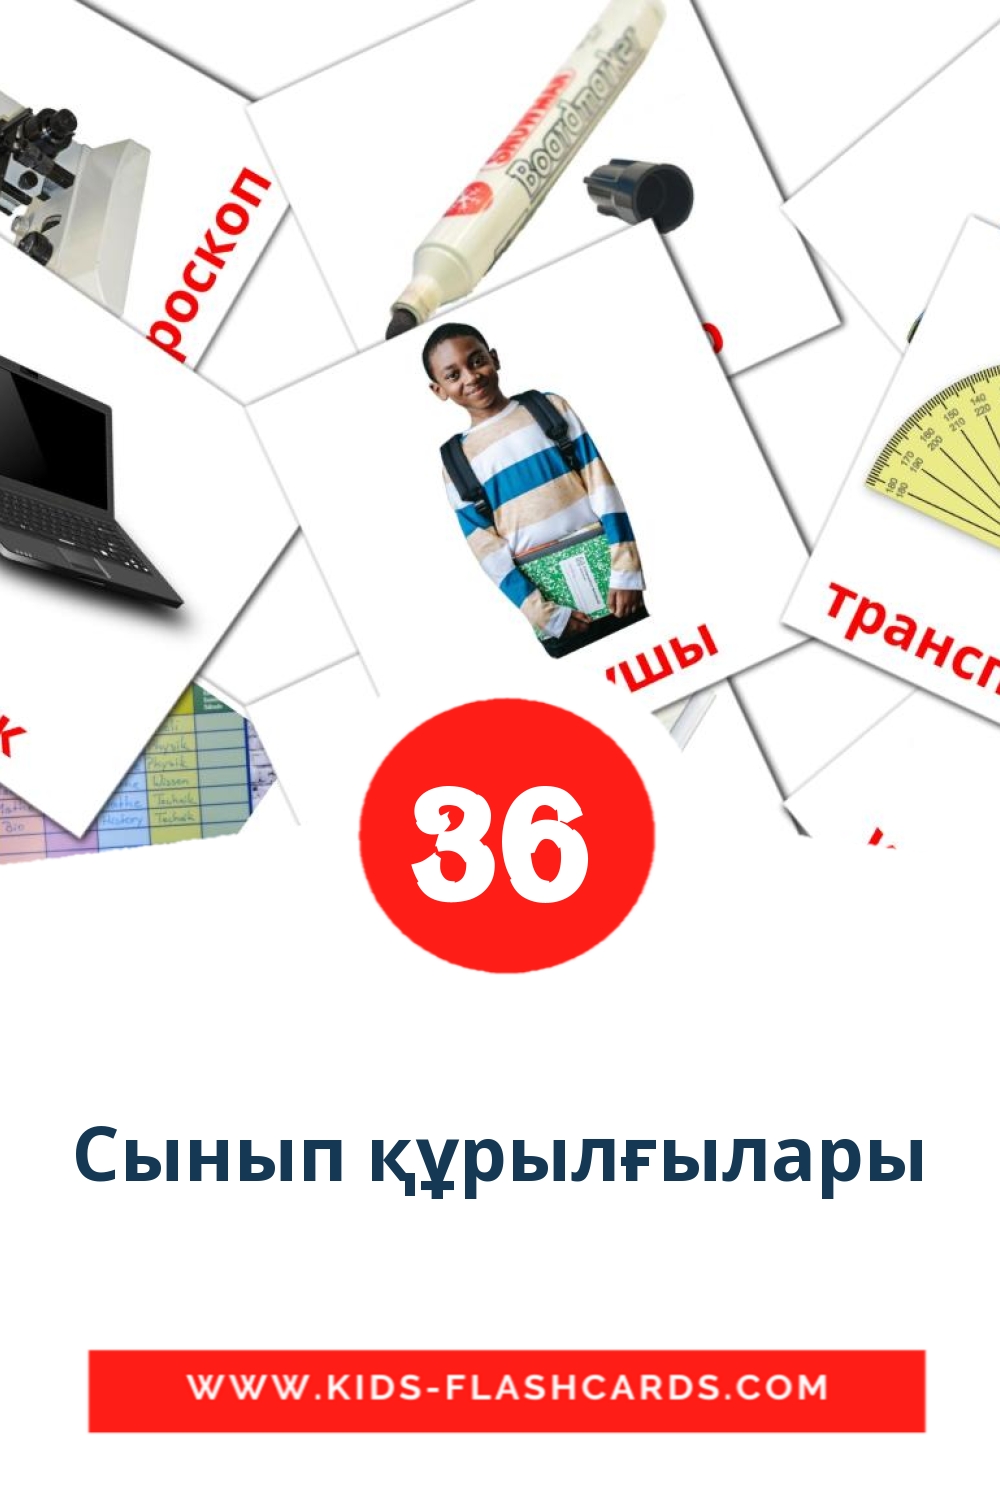 36 tarjetas didacticas de Сынып құрылғылары para el jardín de infancia en kazajo